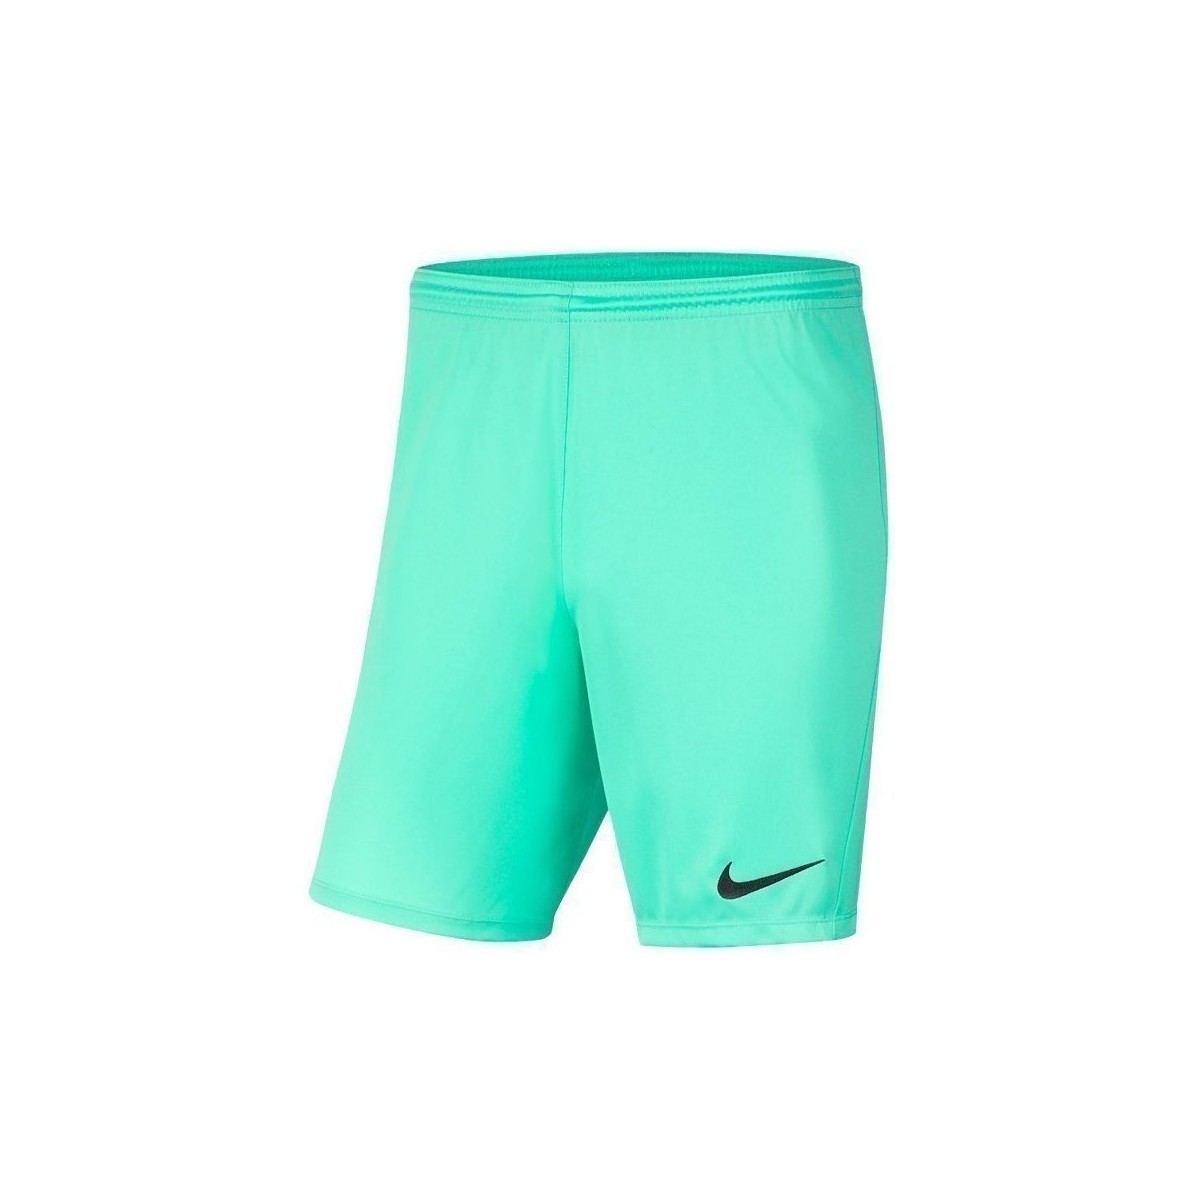 Îmbracaminte Bărbați Pantaloni trei sferturi Nike Dry Park Iii verde